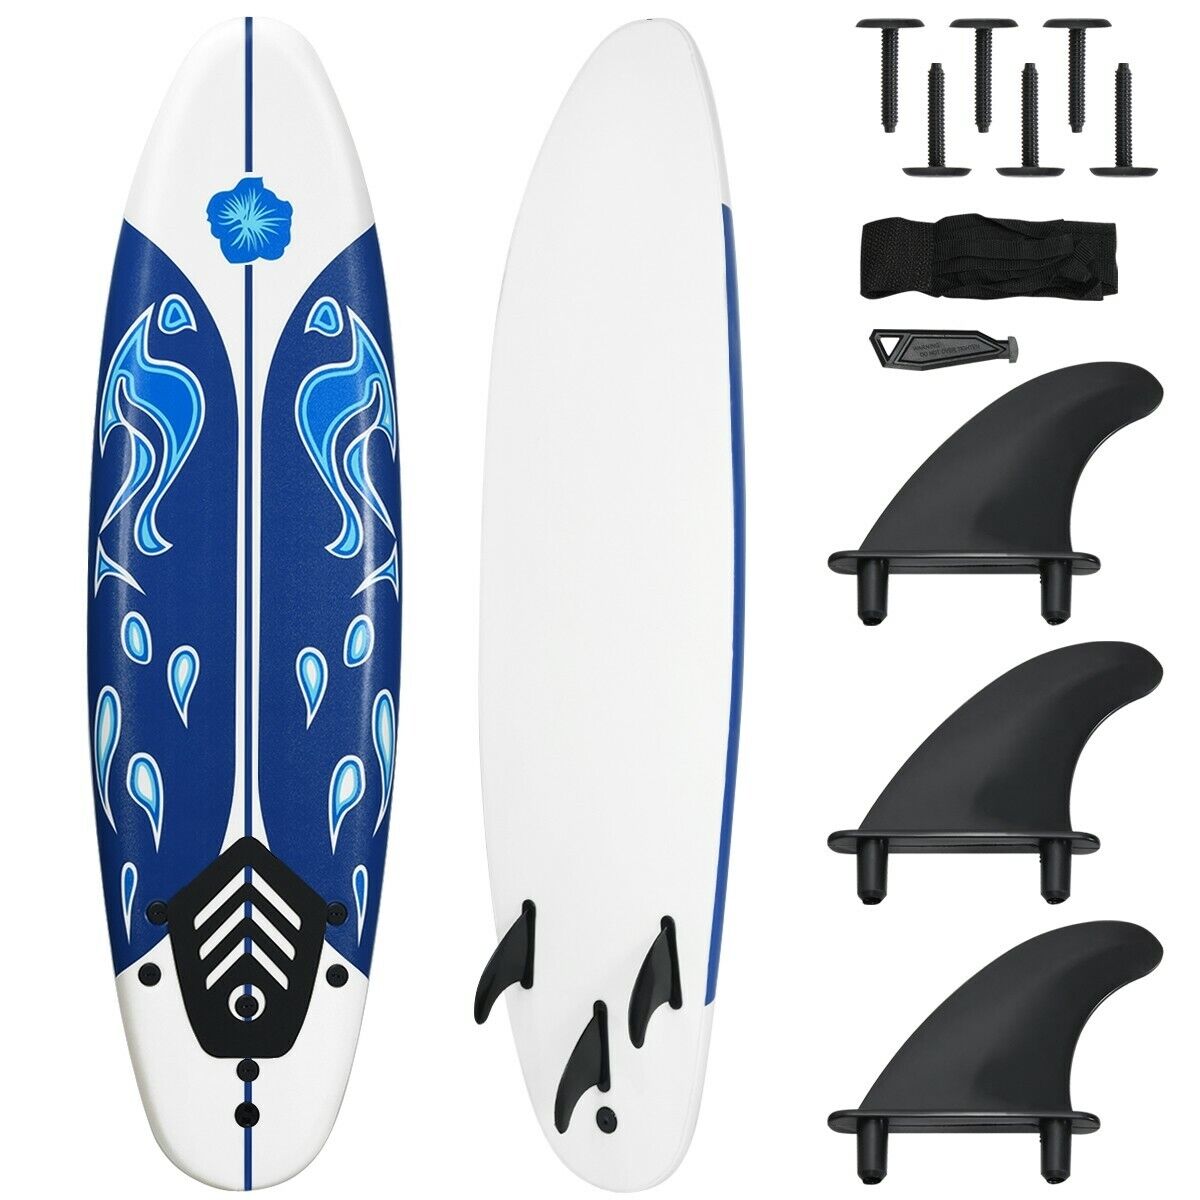 Goplus 6' Surfboard Surf Foamie Boards Surfing Beach Ocean Body